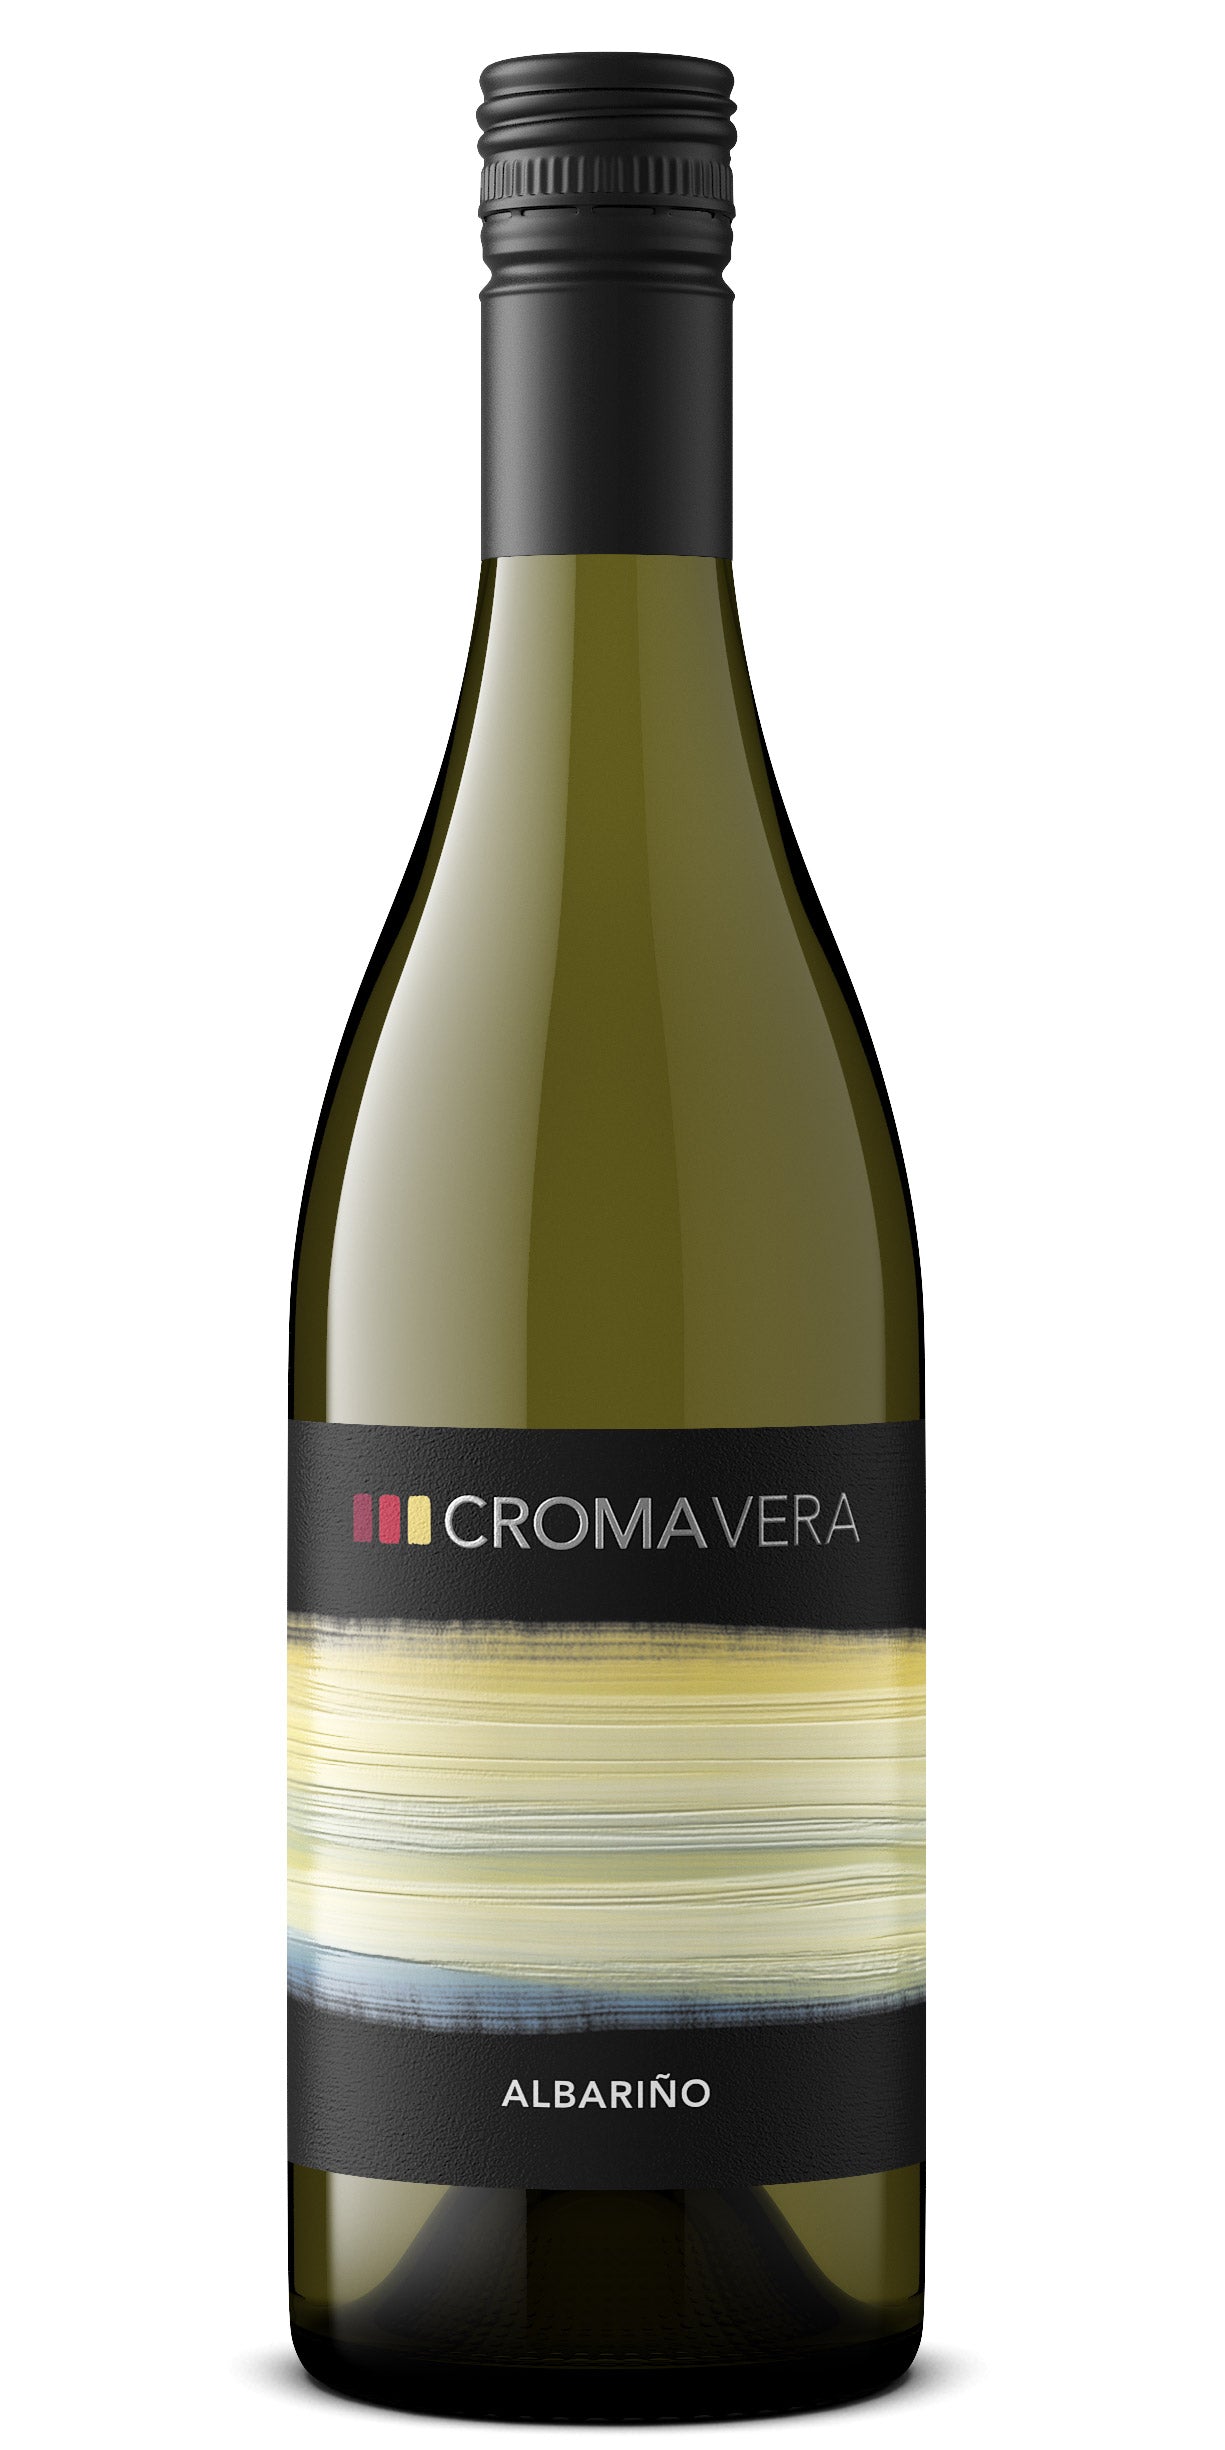 A bottle of Croma Vera Albariño white wine